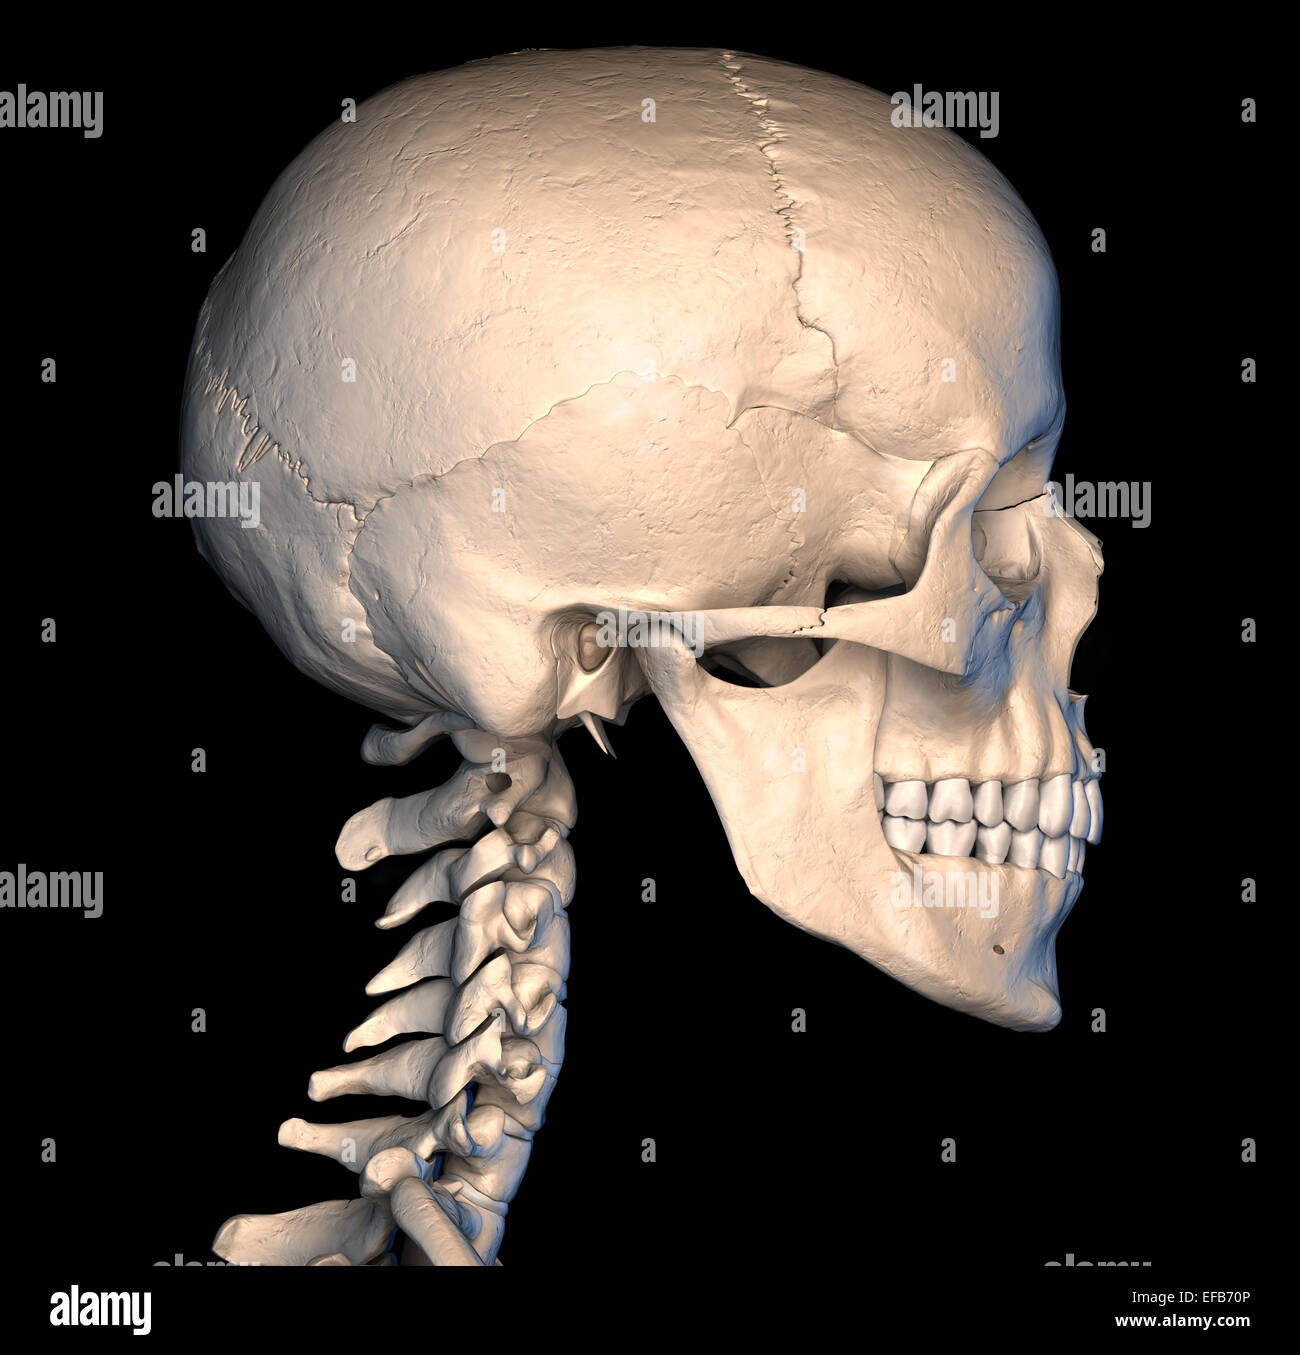 Muy detallada y científicamente correctos. Vista lateral de cráneo humano, sobre fondo negro. Imagen de la anatomía. Foto de stock